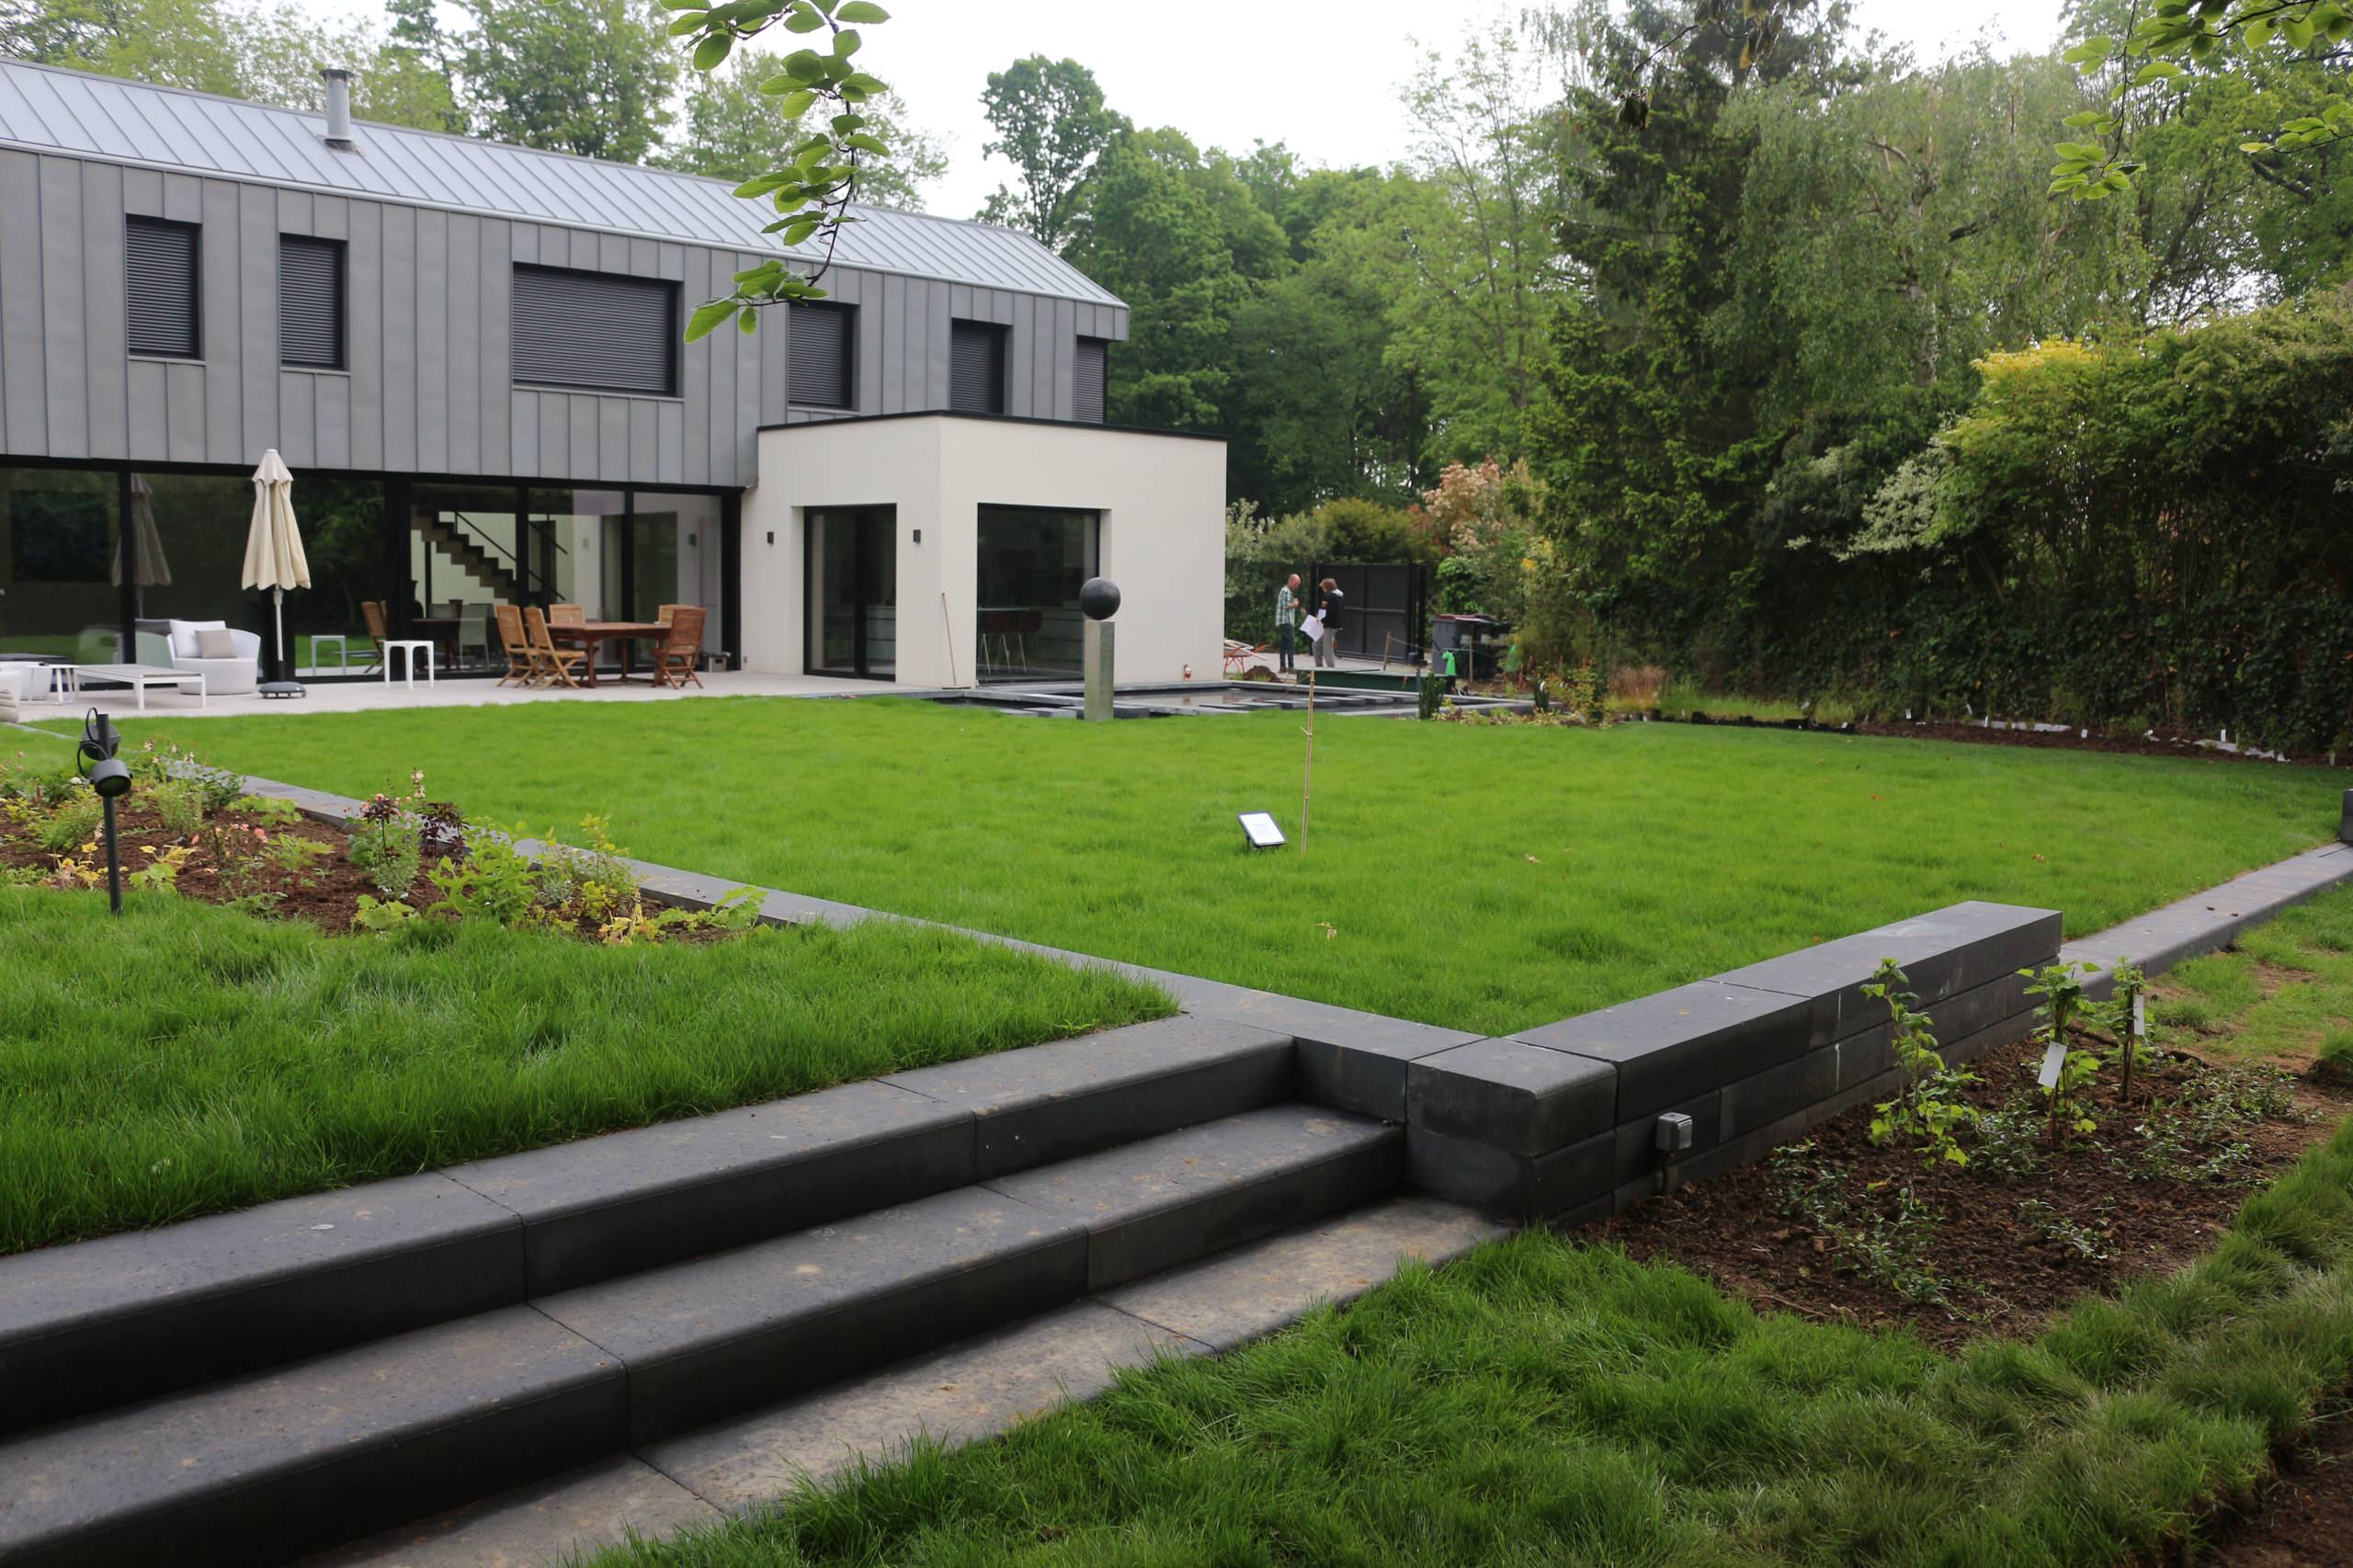 Aménagement d’un jardin autour d’une maison contemporaine - 2150 m²